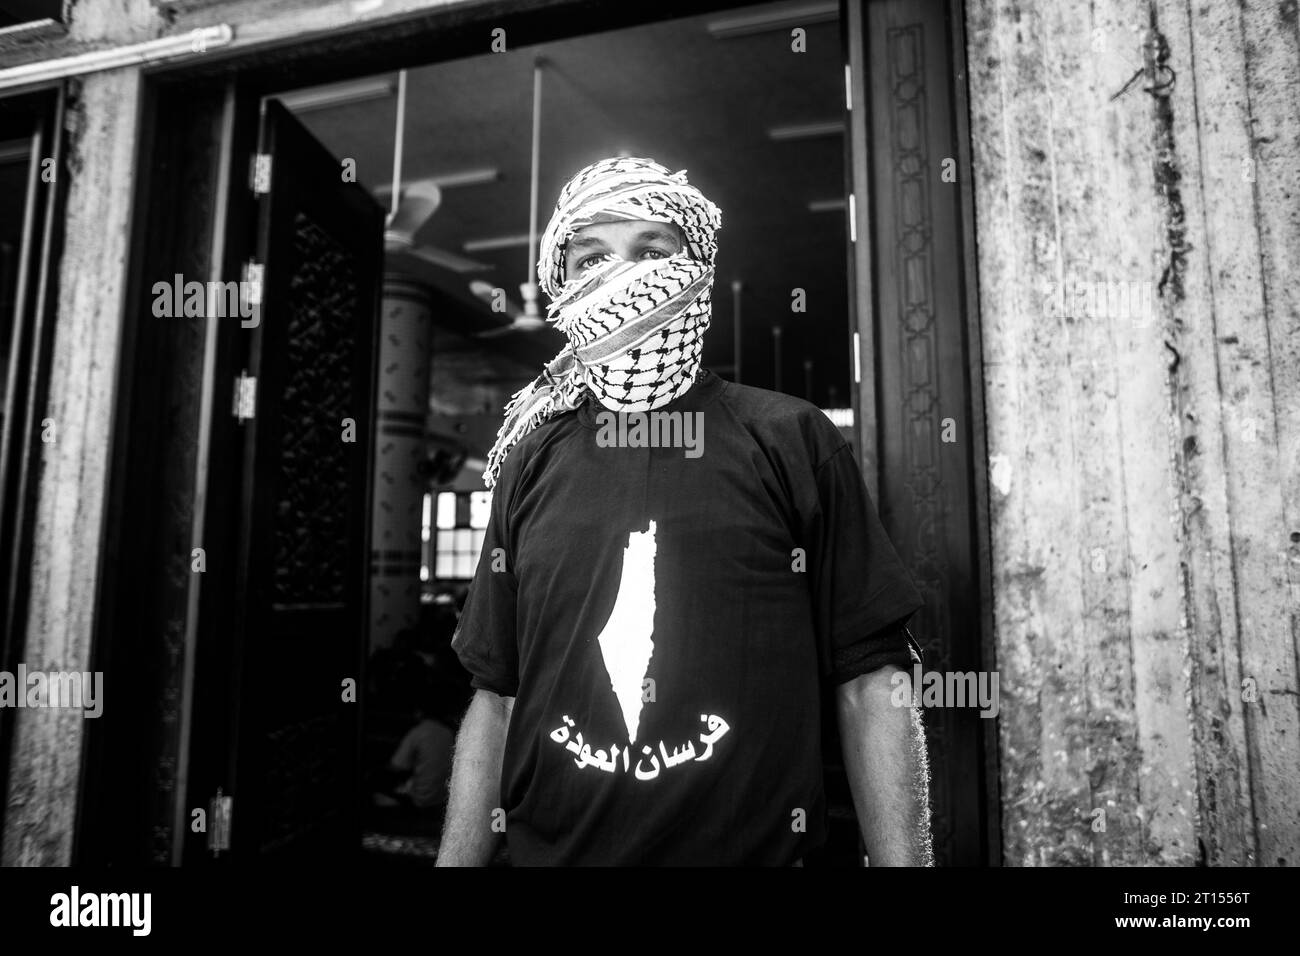 Michael Bunel / Le Pictorium - Konflikt im Gazastreifen - 13/05/2018 - Palästina / Gazastreifen / Rafah - Ein Mann posiert für ein Foto mit einer Karte von palästina auf seinem T-Shirt während der Beerdigung von Jamal Affana (15), der bei Protesten letzten Freitag bei einer Schusswunde erlag Grenzzaun zu Israel am 13. Mai 2018 in Rafah, Gaza. Jamal wurde am Freitag von einem israelischen Scharfschützen getötet, während er an den Protesten teilnahm. Für die 1,9 Millionen Palästinenser, die im Gazastreifen leben, ist das Leben nach 10 Jahren israelischer Blockade in der Region zu einem täglichen Kampf um Nahrung, Strom und Geld geworden. Die Protes Stockfoto